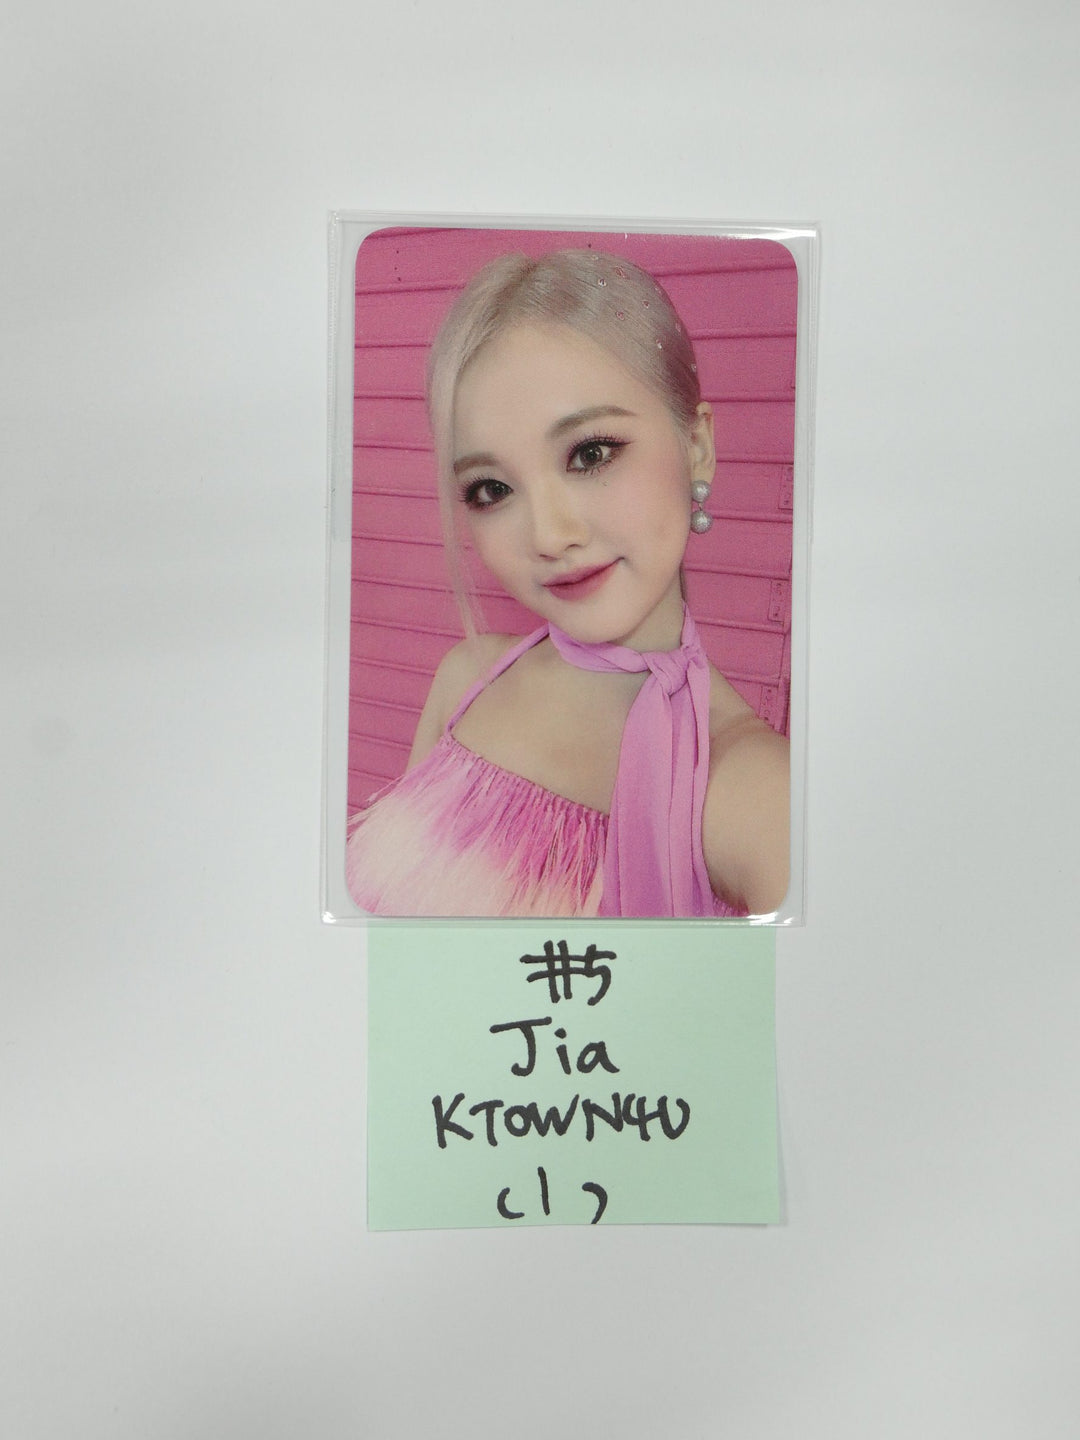 TRI.BE 'VENI VIDI VICI' 1st Mini - Ktown4U Fansign Event Photocard [Updated 12/ 8]